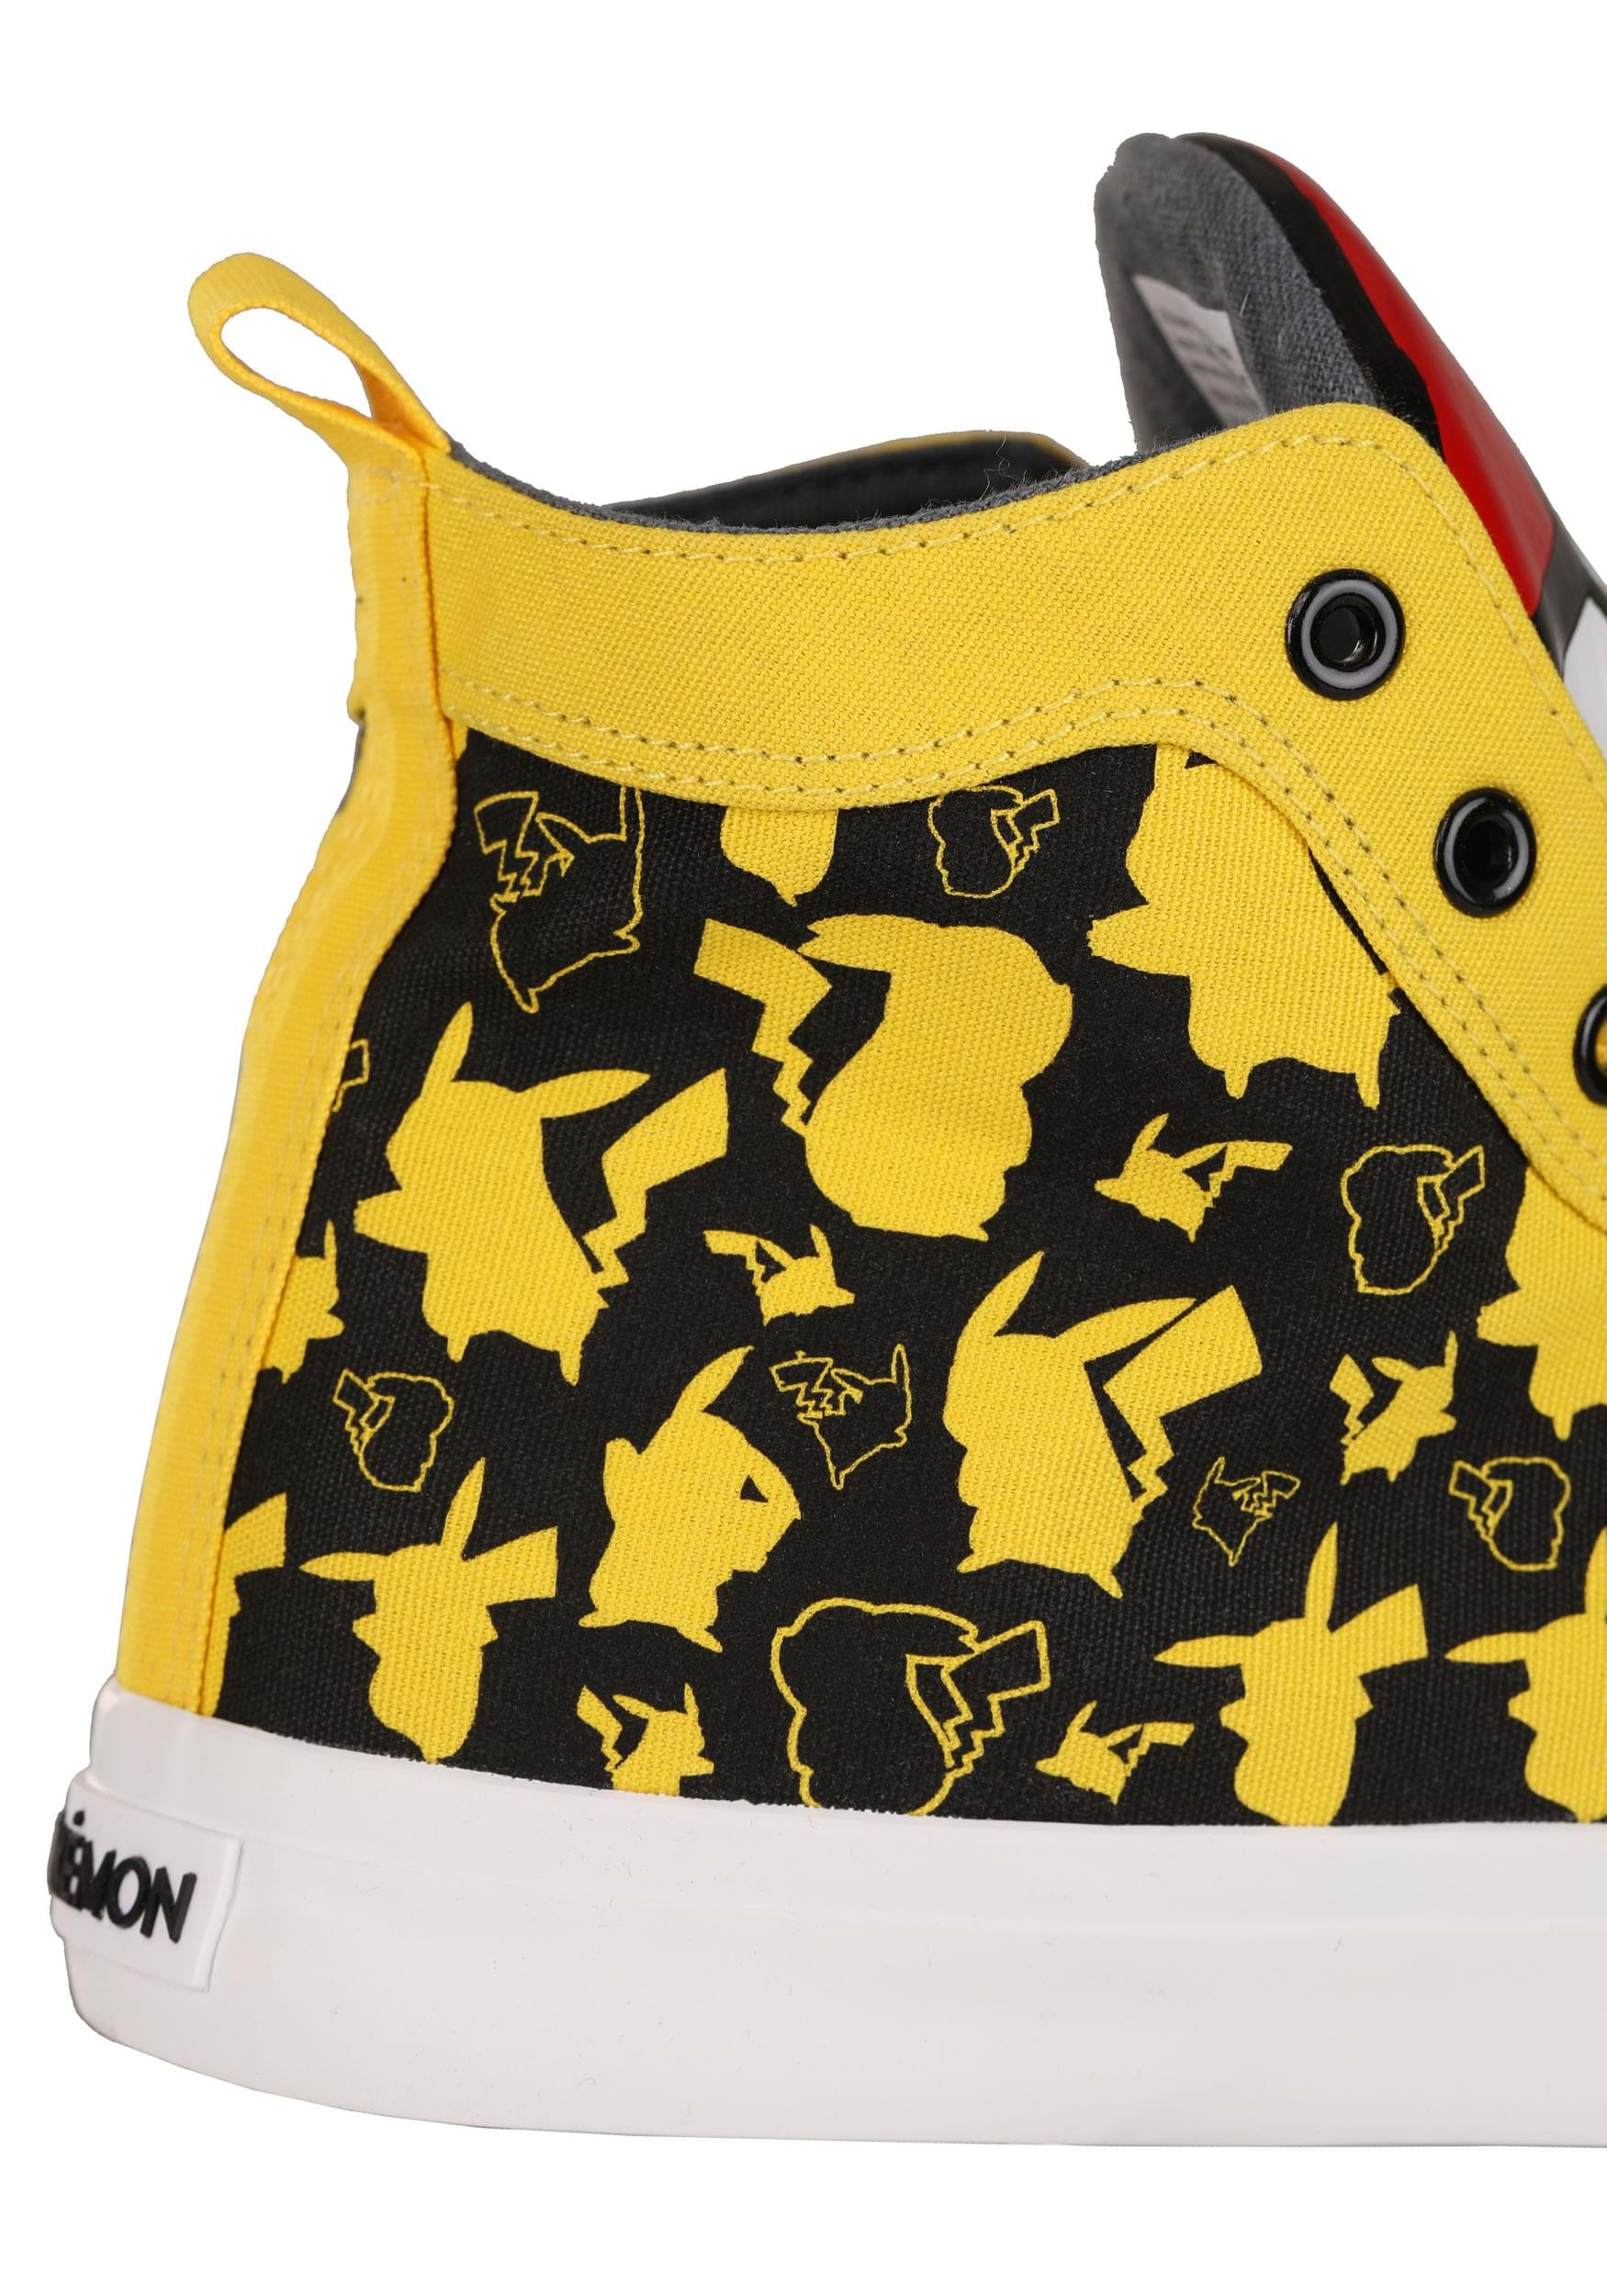 Adult Pokémon Pikachu High Top Shoes , Pokémon Accessories